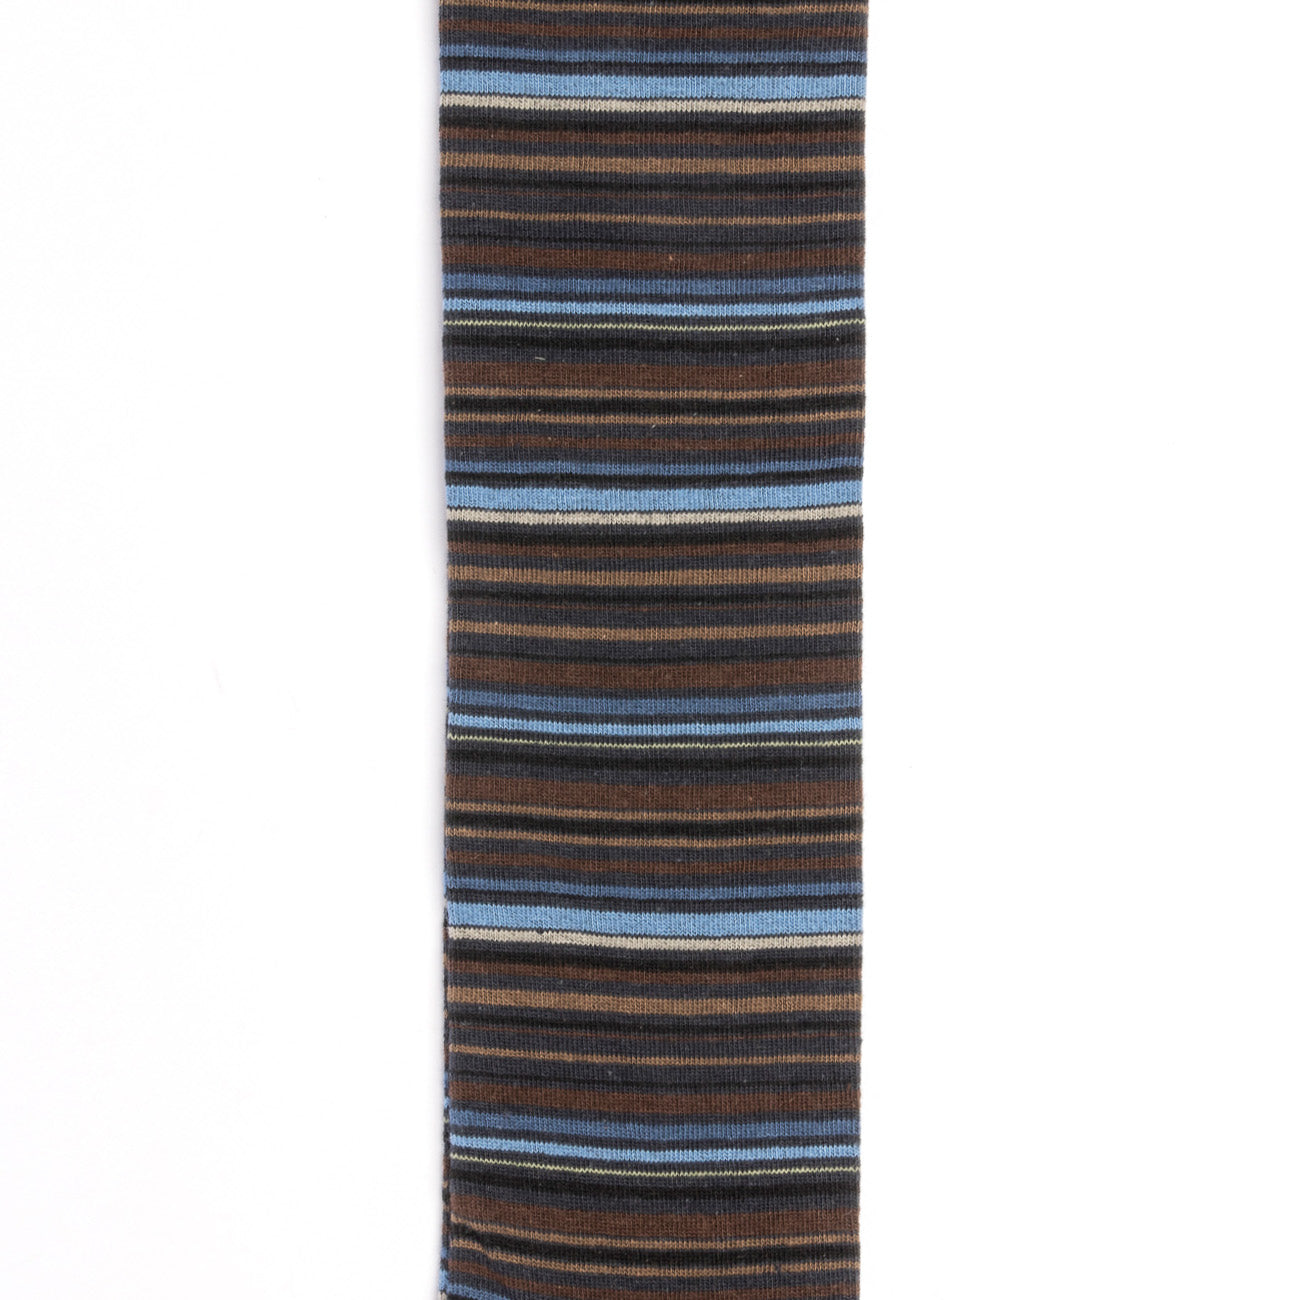 Calza Alto Milano Emerald Long in cotone bicolor marrone e azzurro